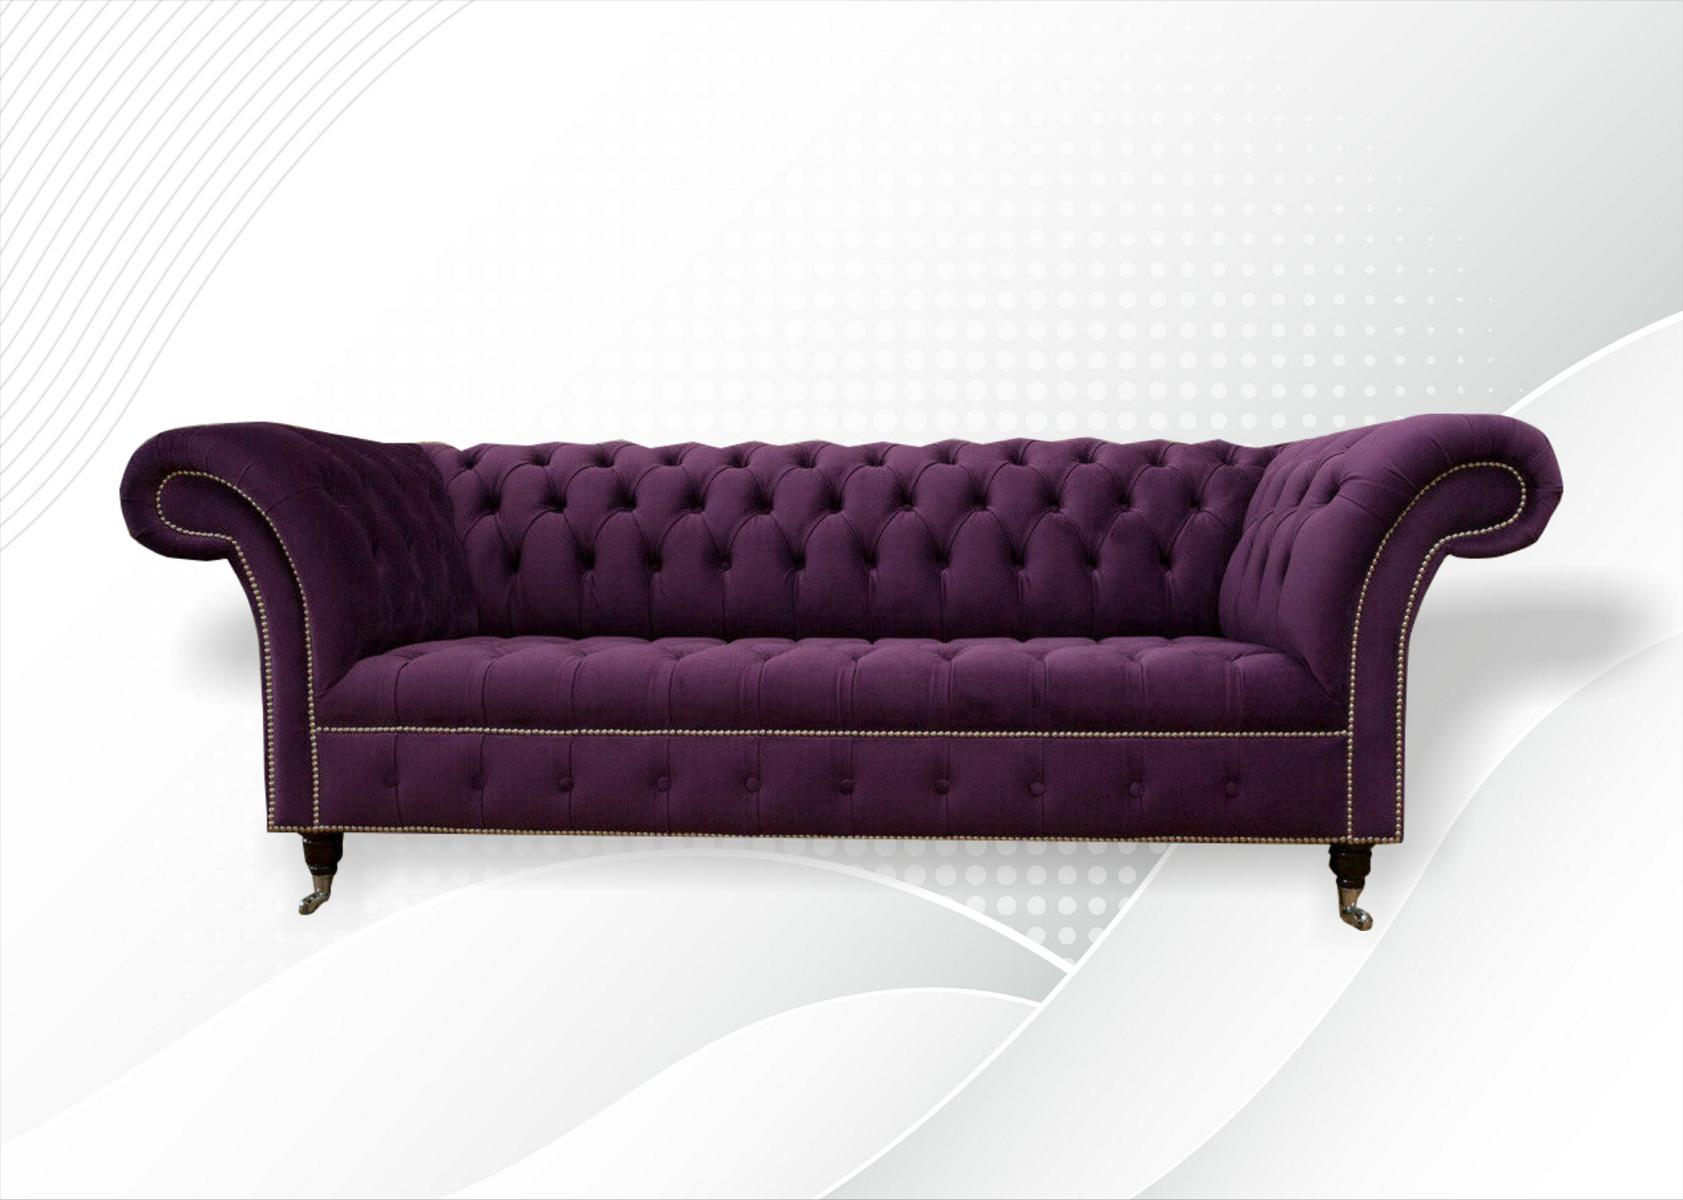 xxl Sofa 3 Sitzer Couch Chesterfield Polster Sitz Garnitur Leder Textil